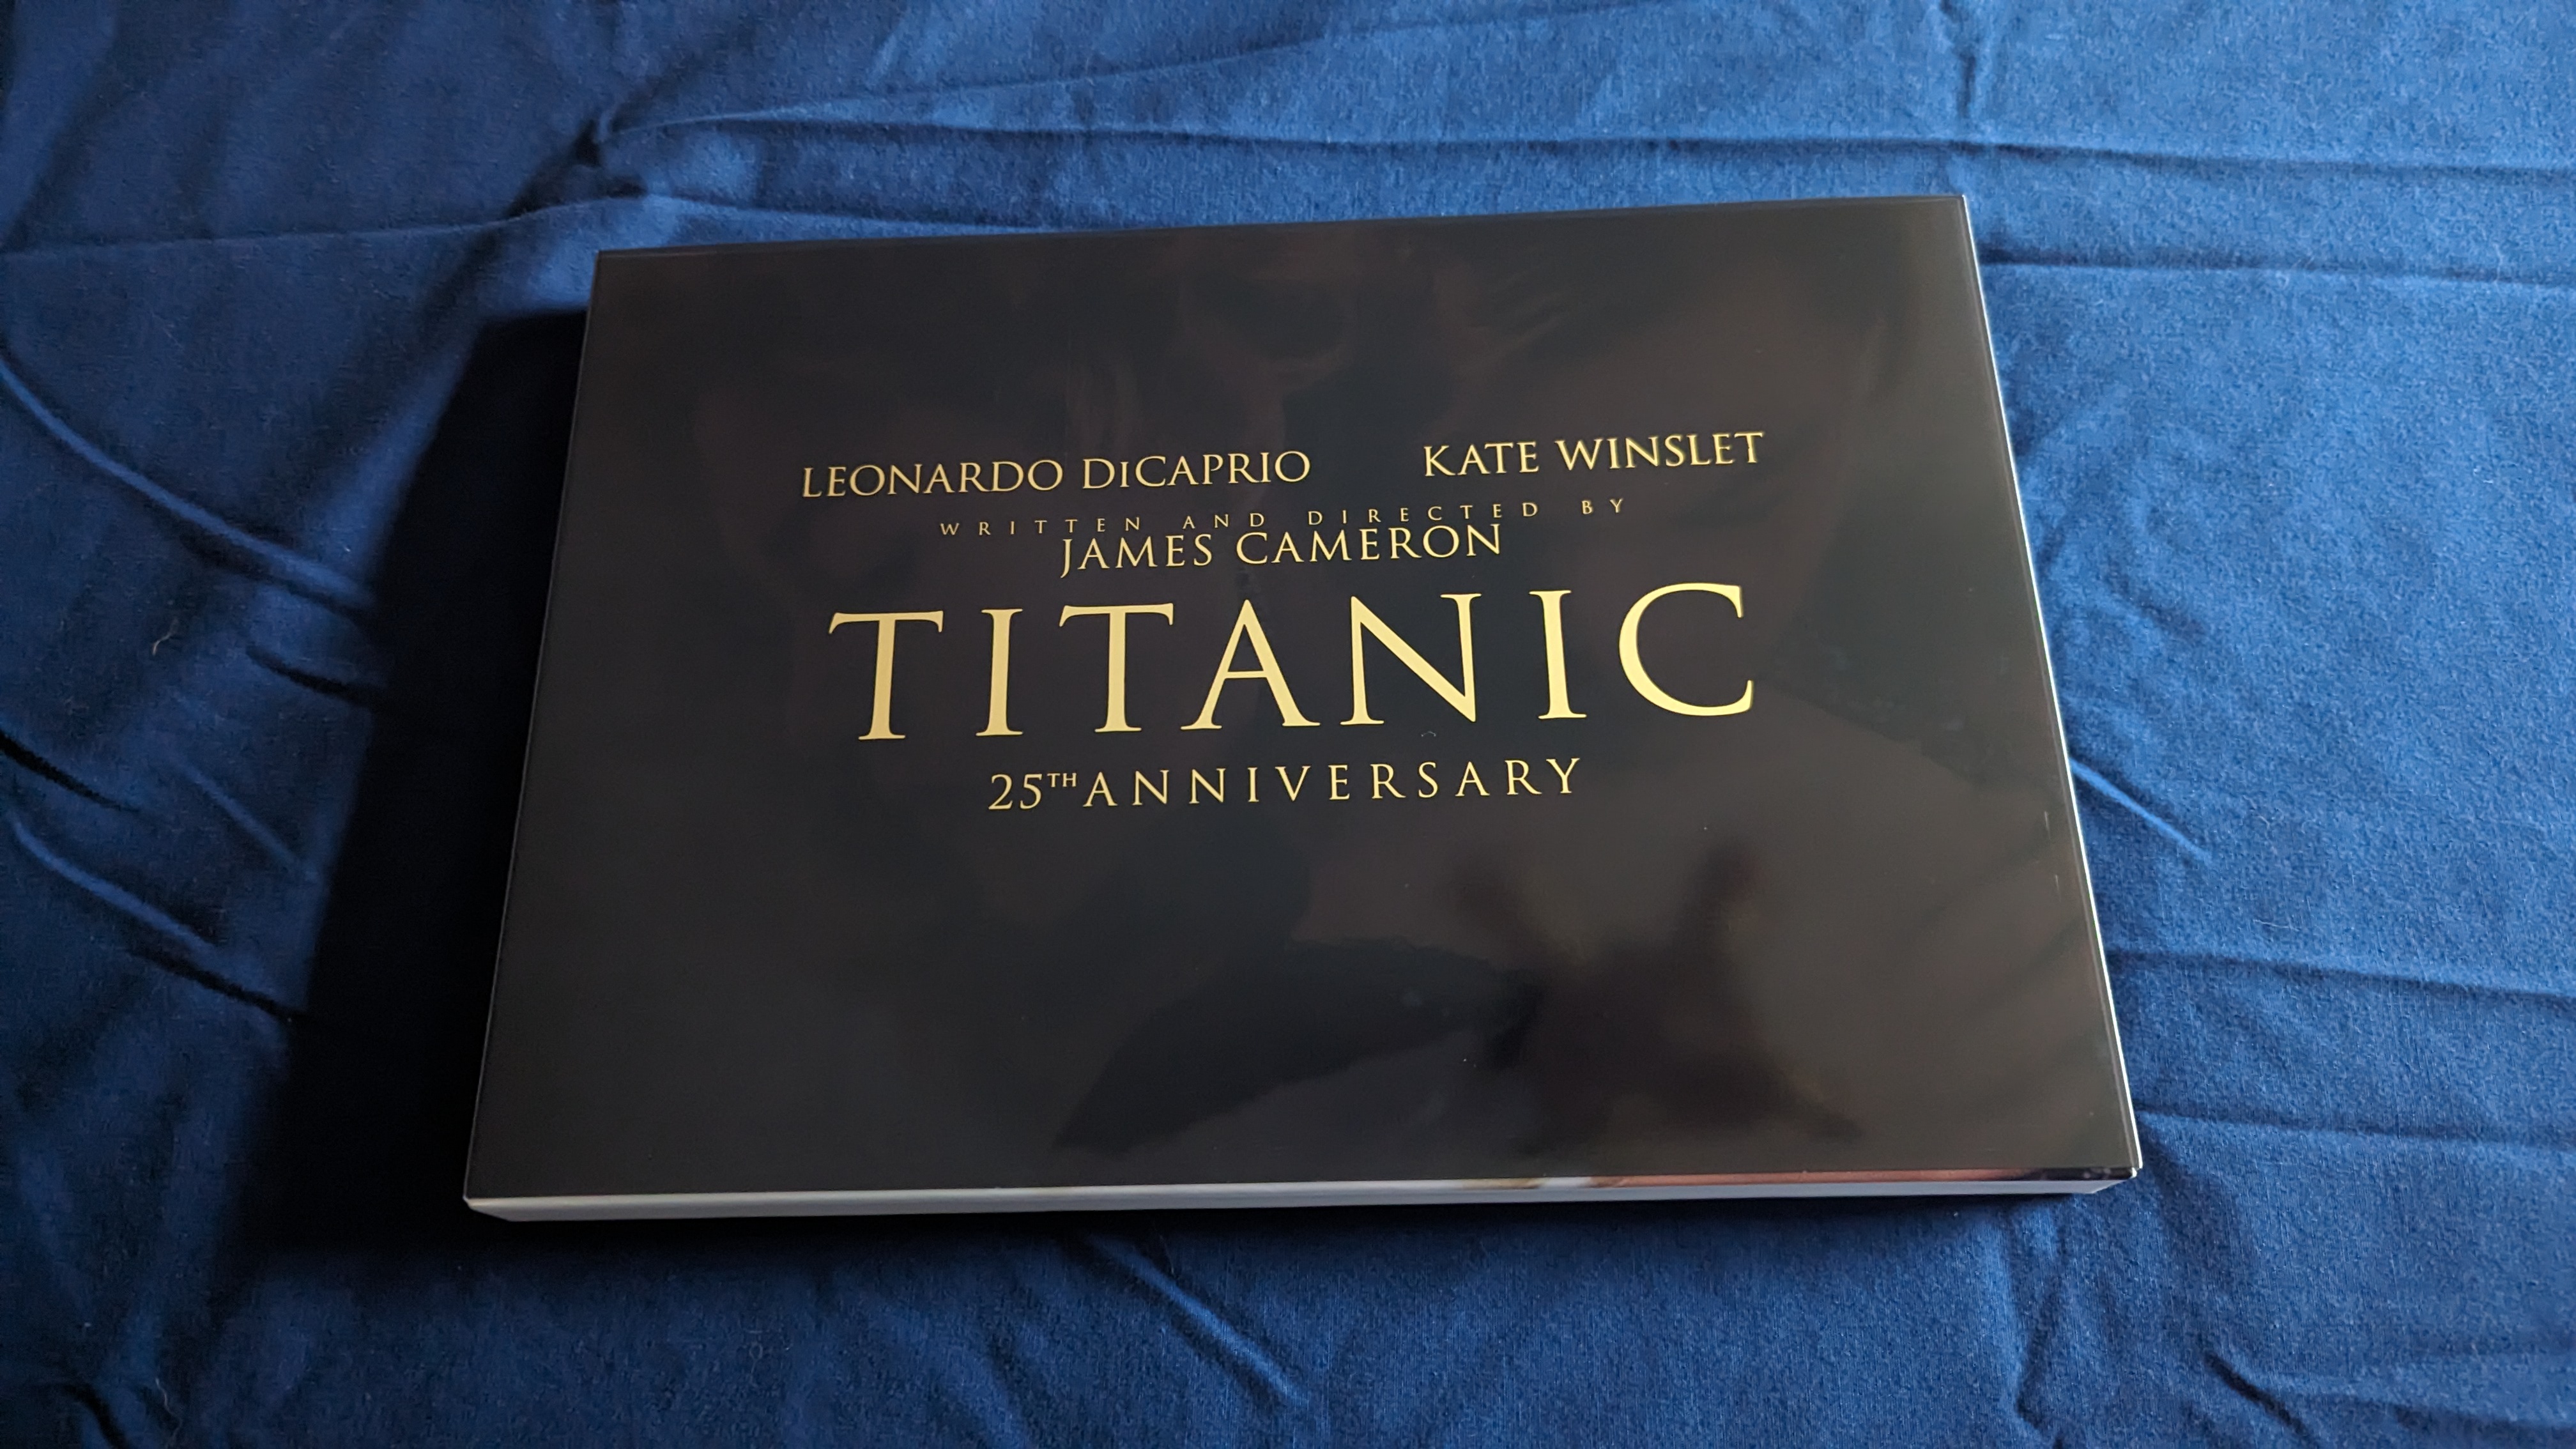 Titanic 4K Blu-ray (4K Ultra HD + Digital 4K)